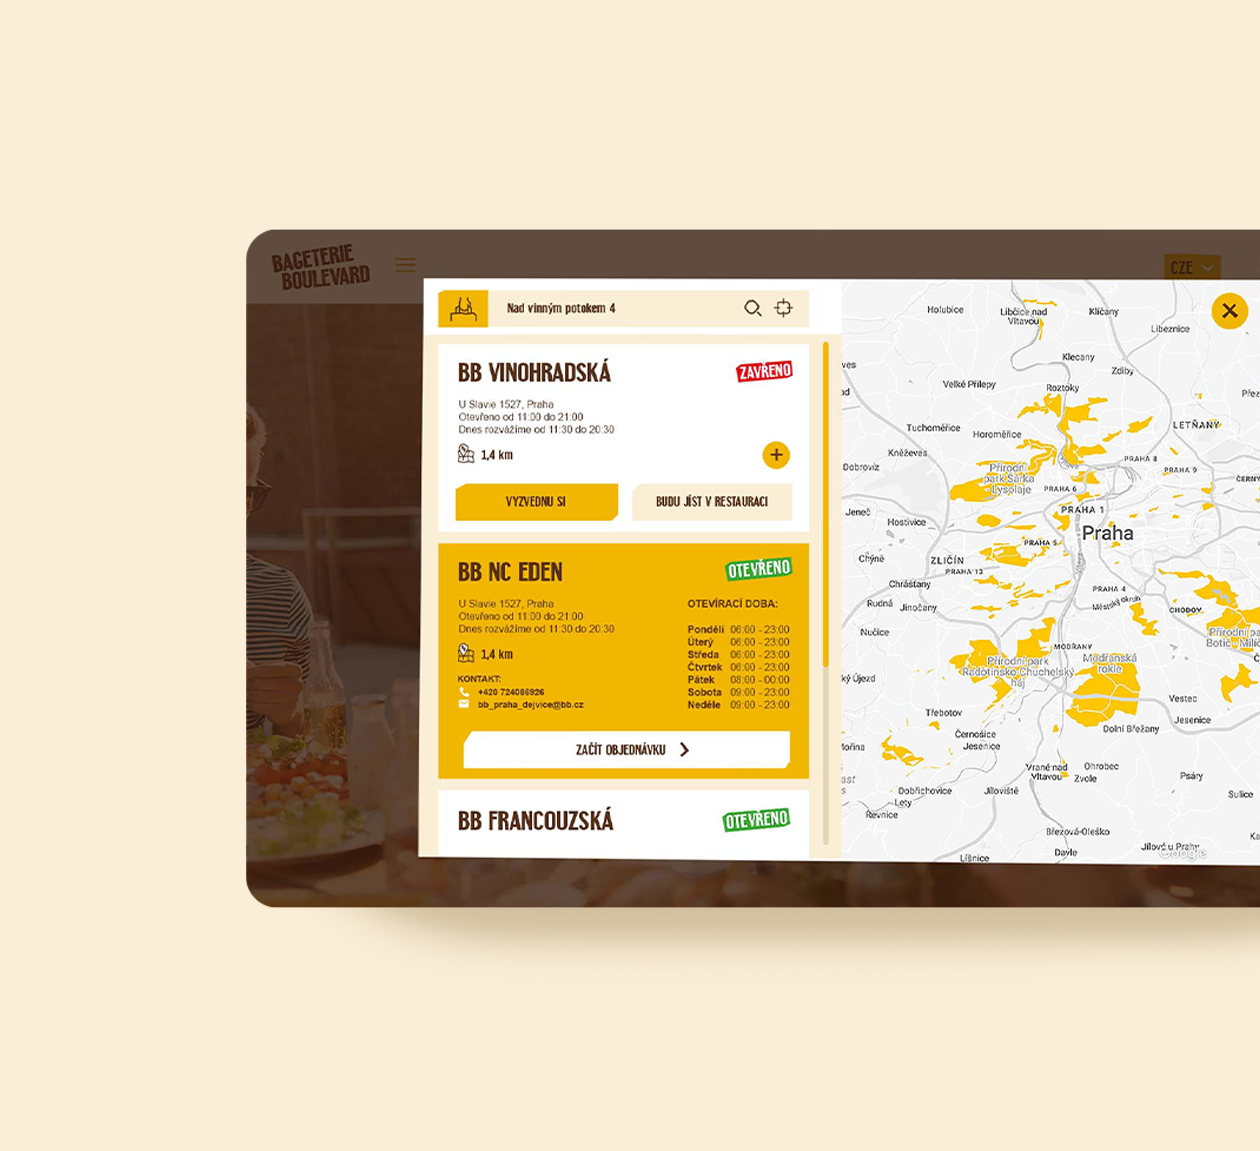 bageterie boulevard food delivery app design ui ux